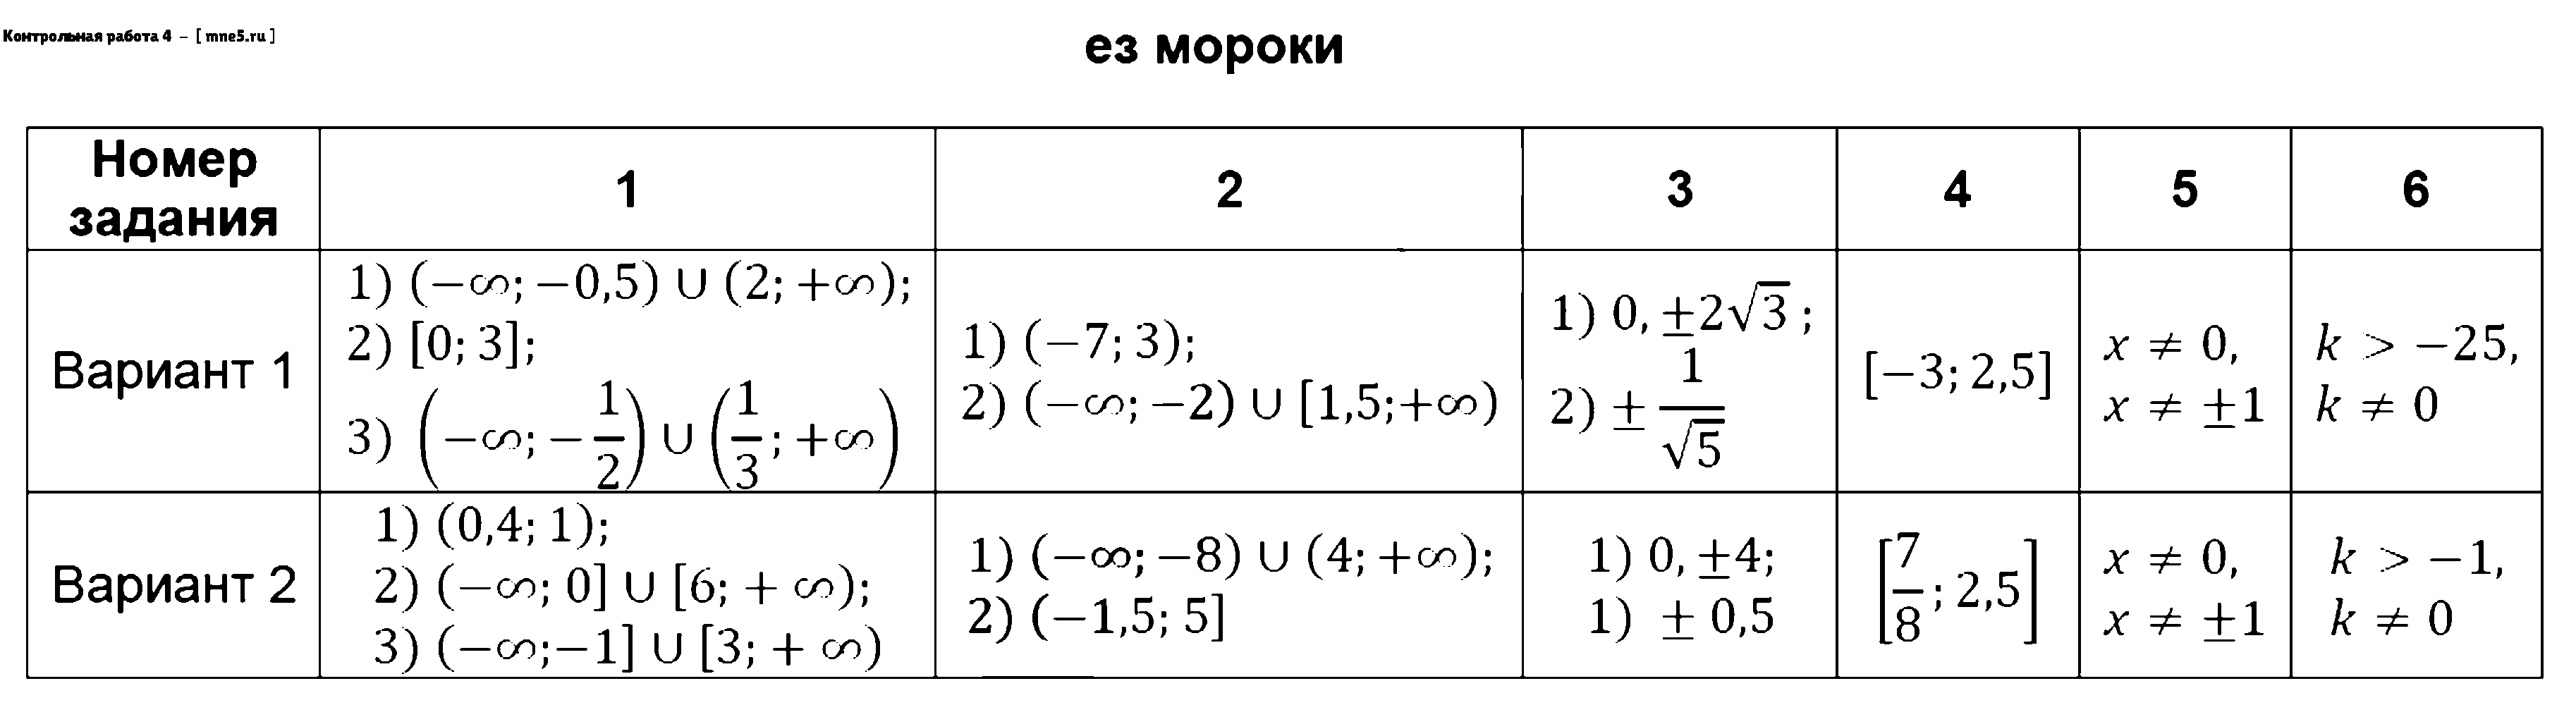 ГДЗ Алгебра 9 класс - Контрольная работа 4